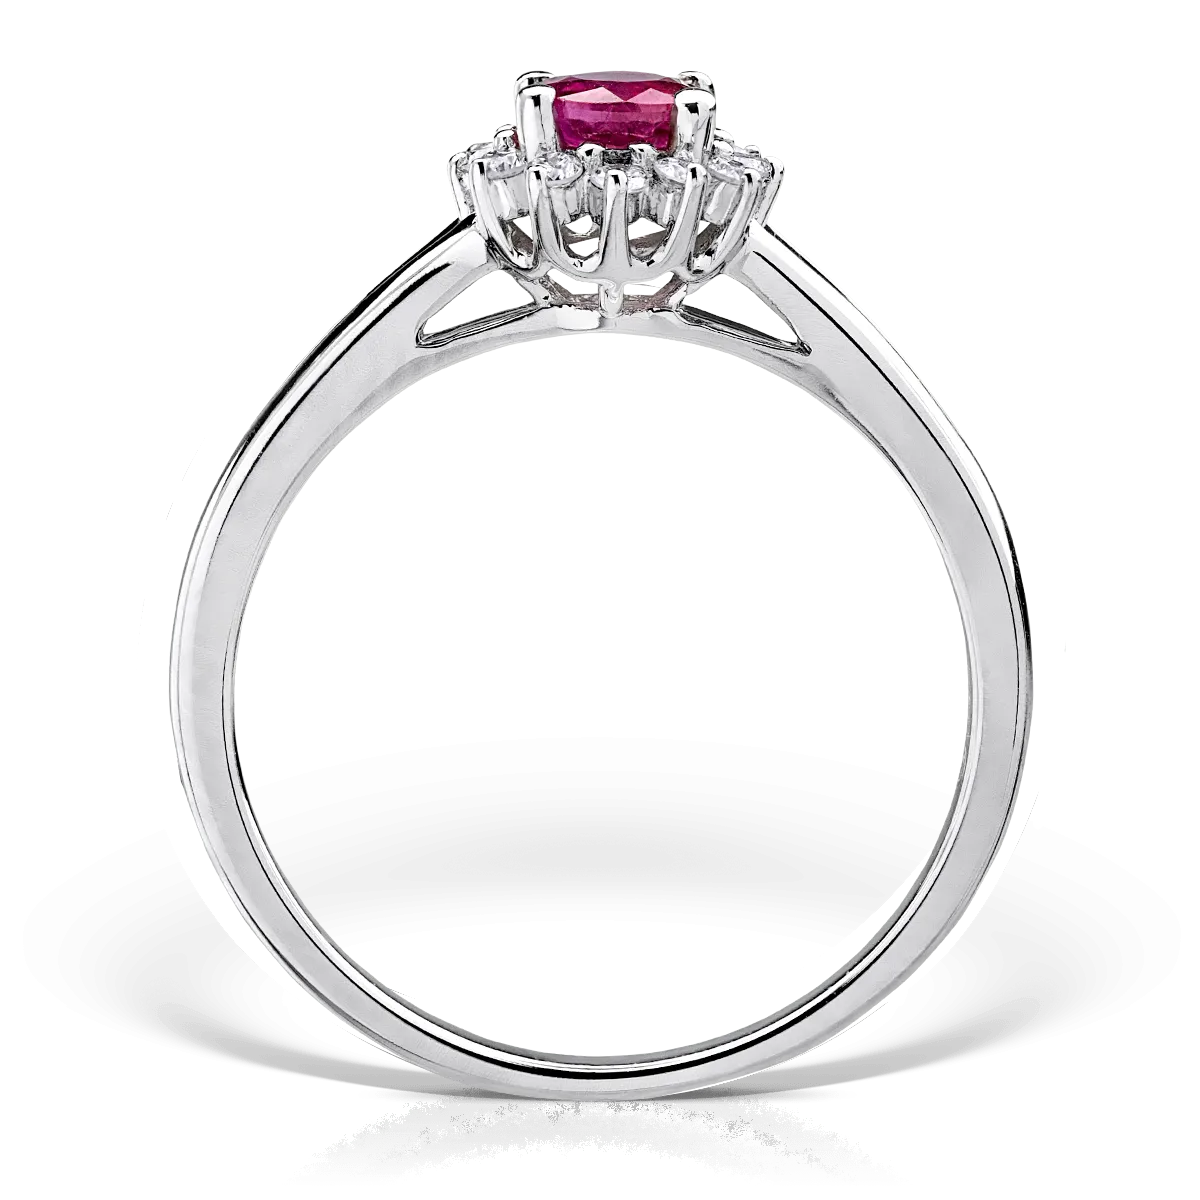 18K fehérarany gyűrű 0.45ct rubinnal és 0.12ct gyémánttal